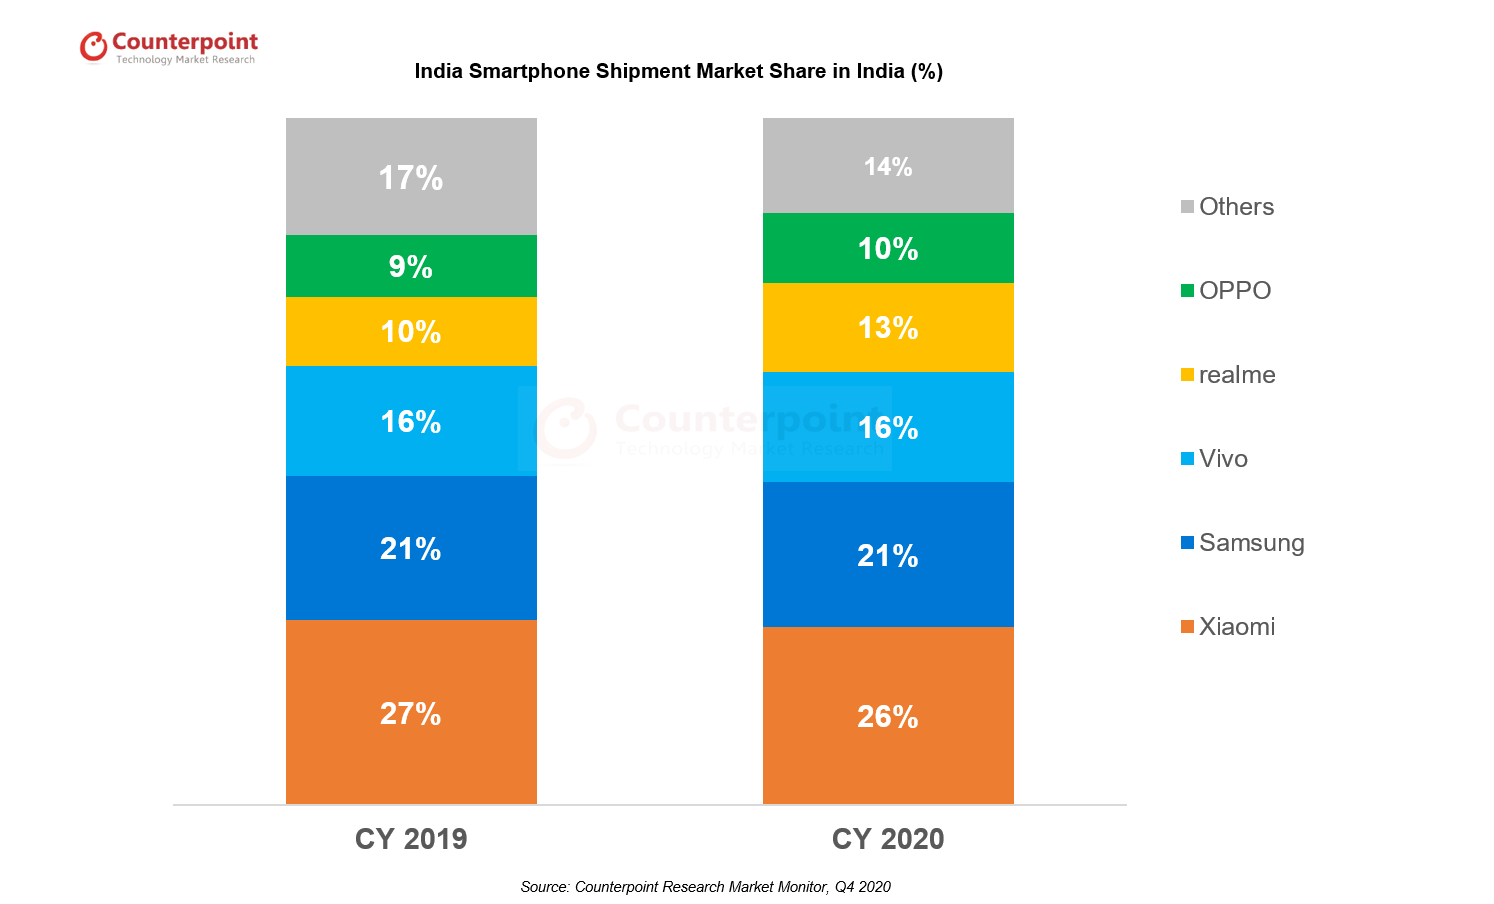 Udio tržišta indijskih pametnih telefona 2020 Istraživanje kontrapunkta